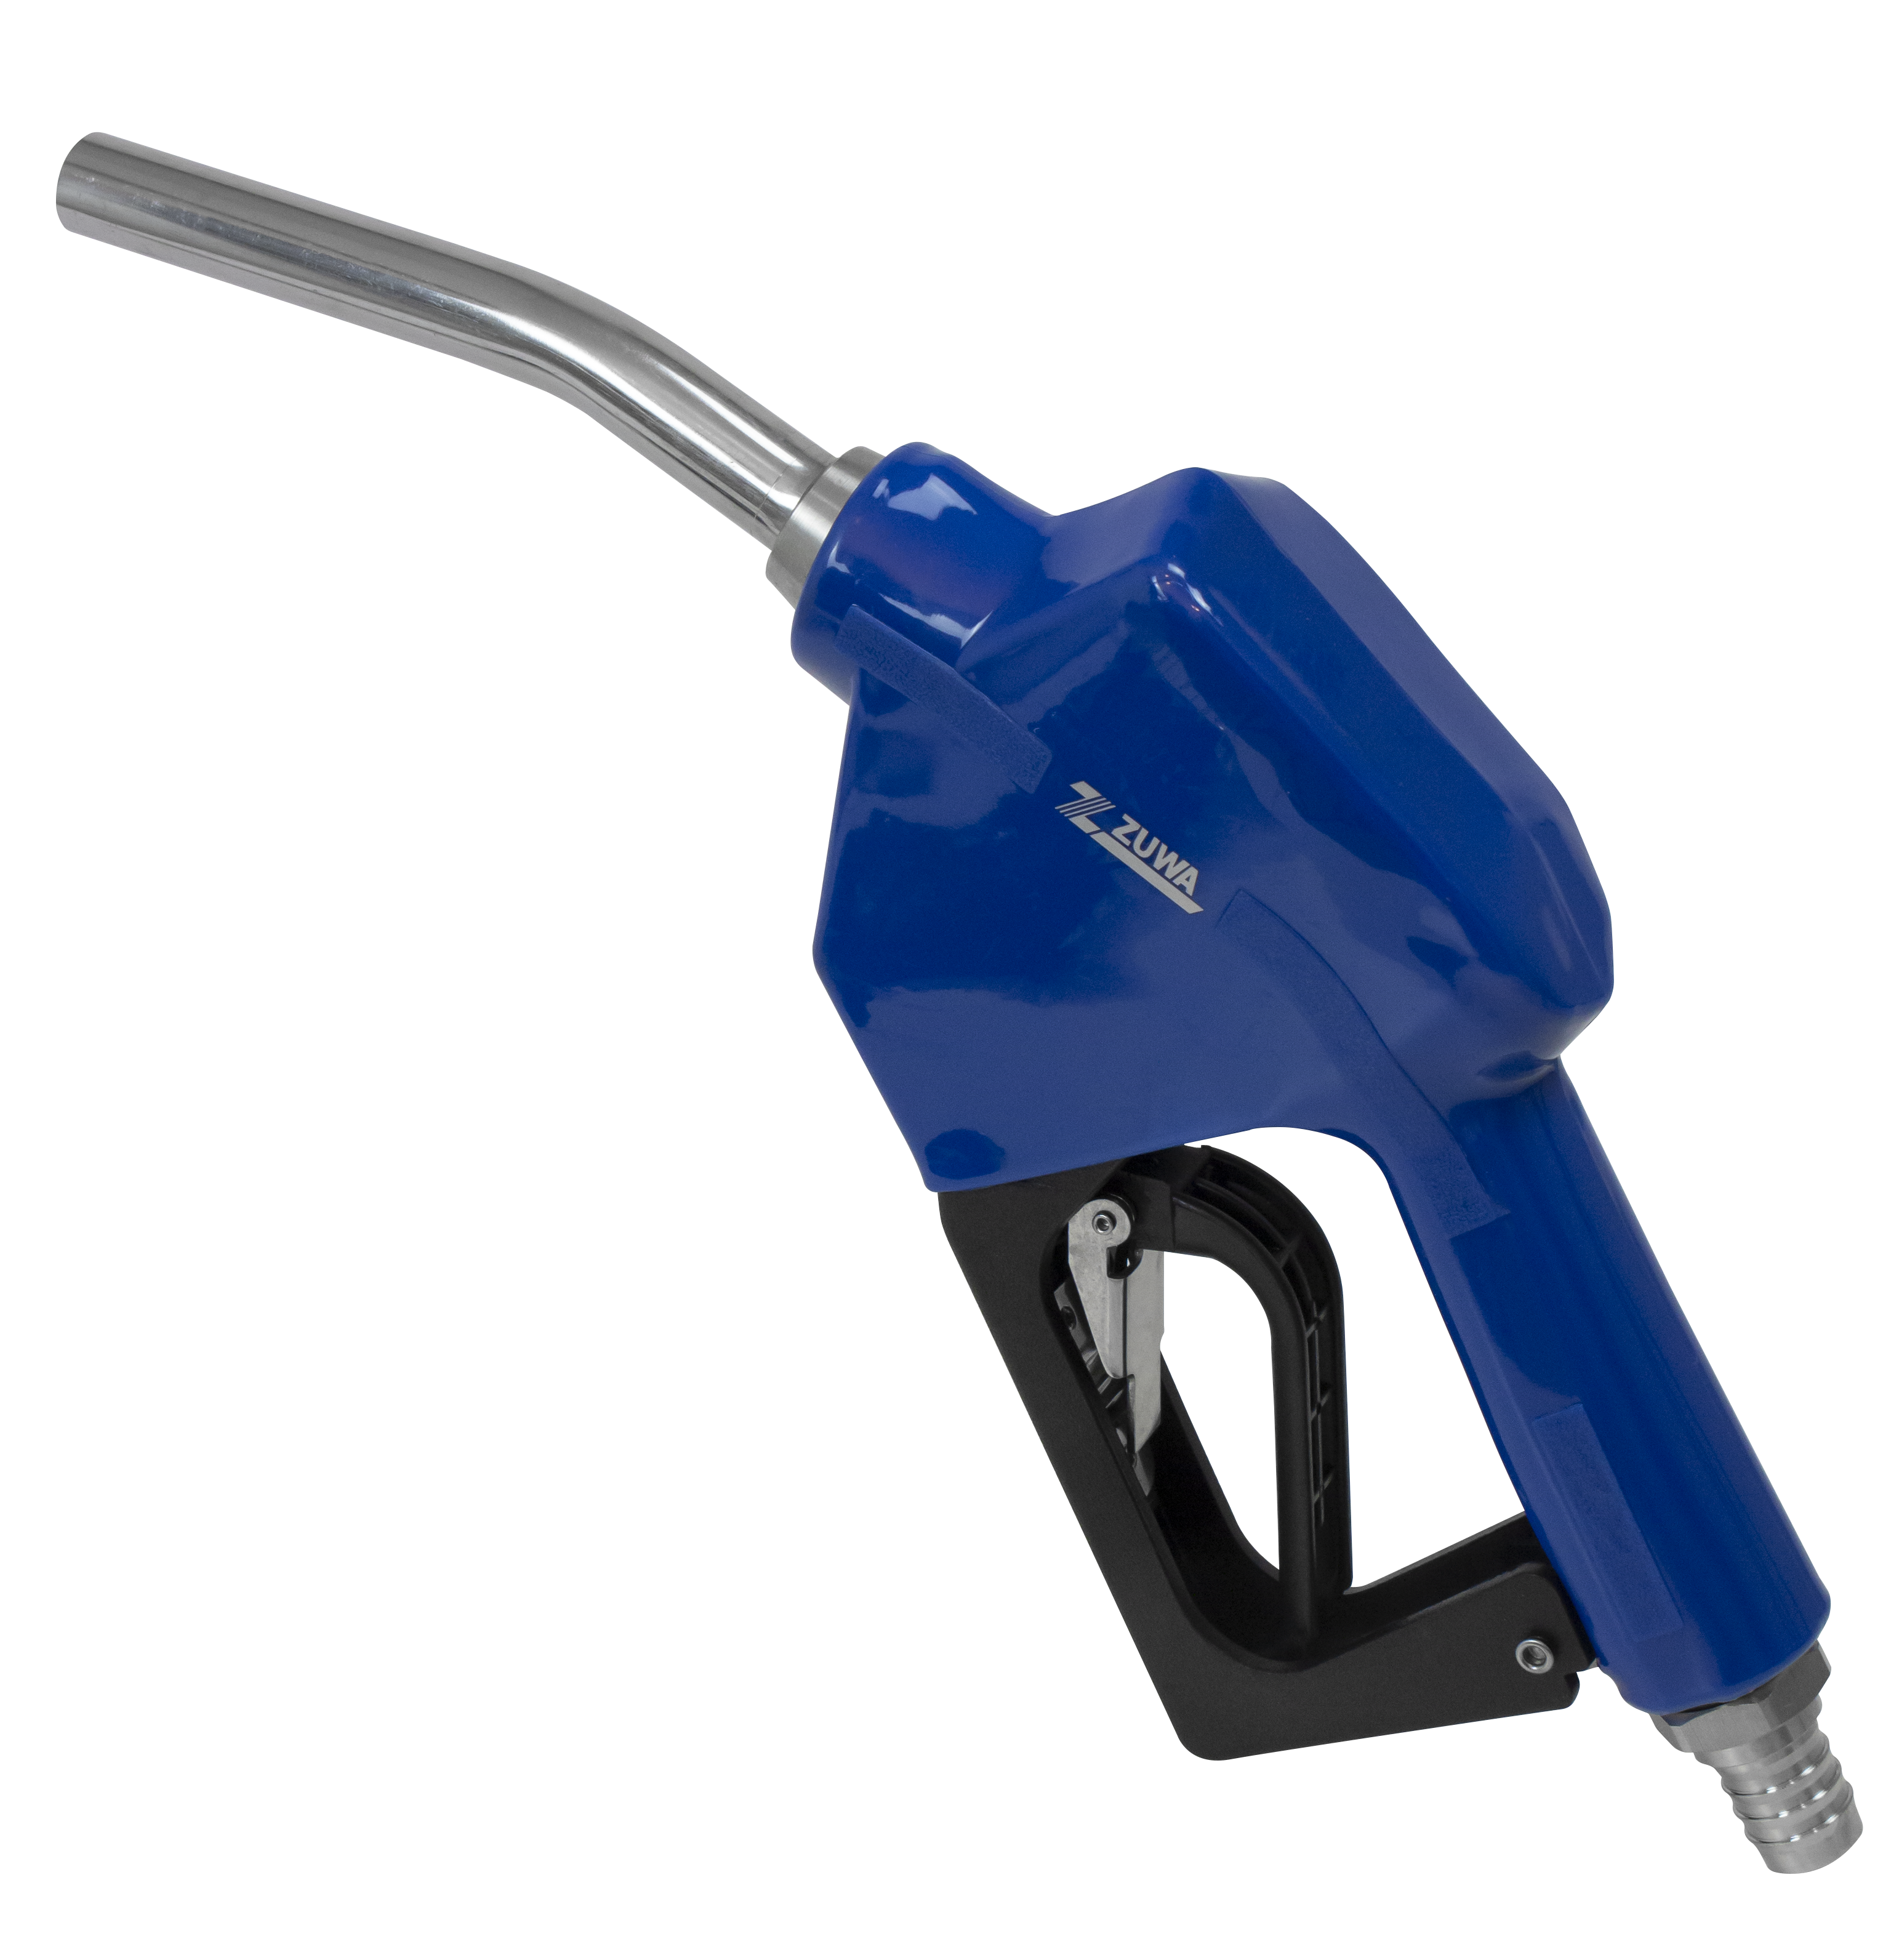 Manuelle und automatische Zapfpistolen für Diesel, AdBlue®, Öl und Heizöl  (RME)